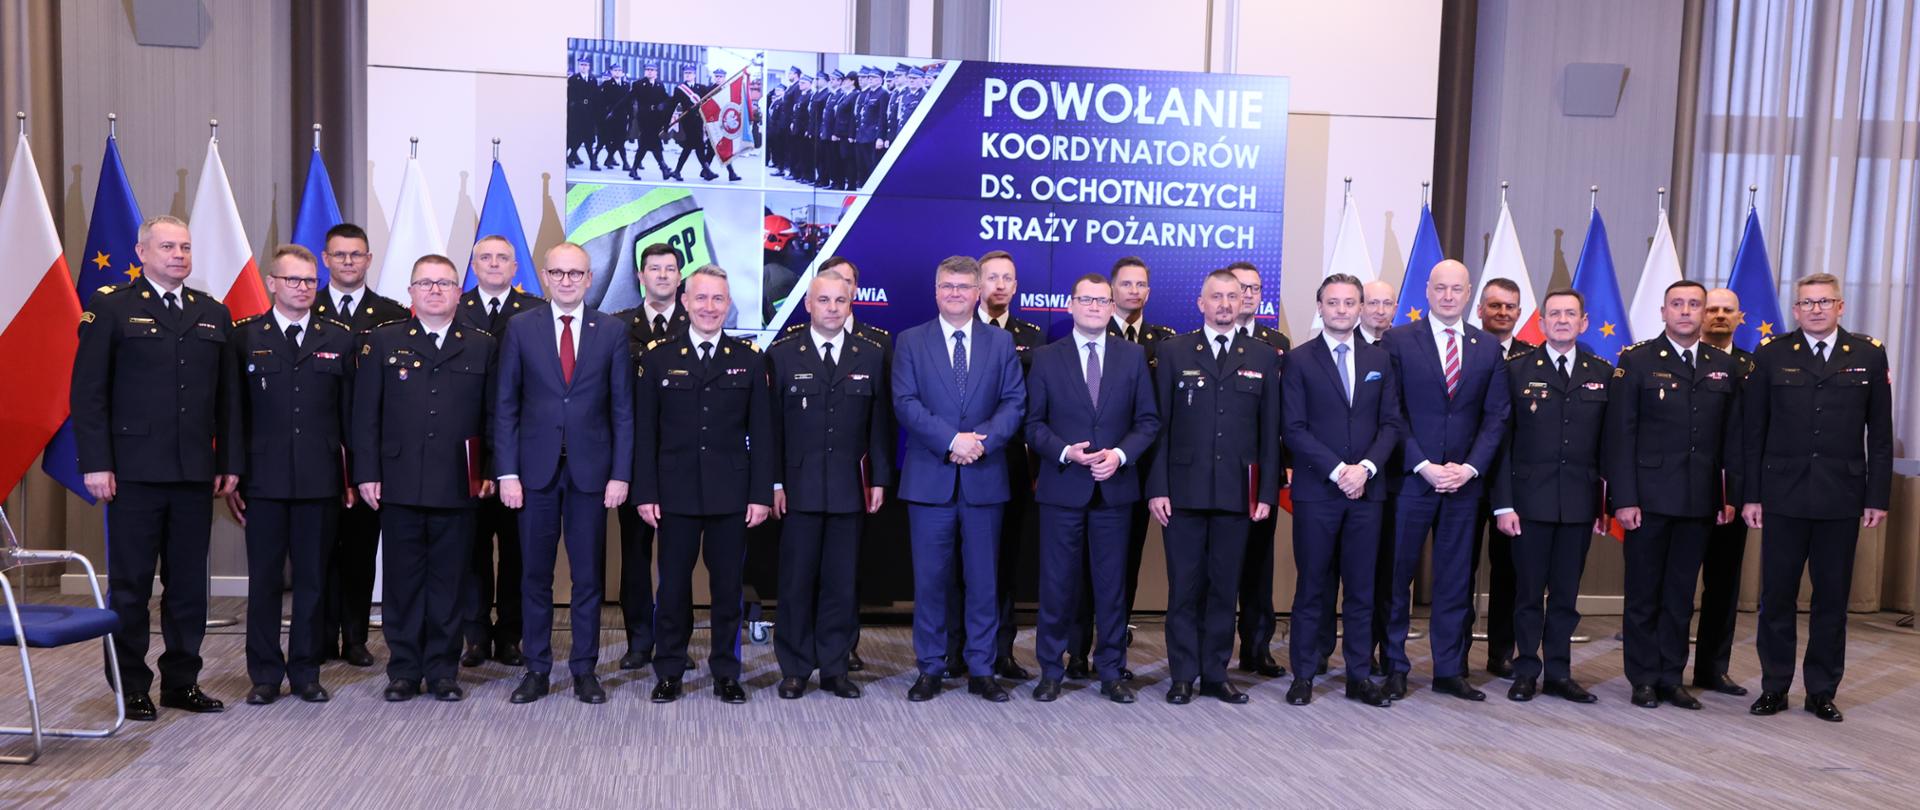 Zastępcy komendantów wojewódzkich PSP w granatowych mundurach wśród nich z pracownicy MSWiA. Za ich plecami flaga Polski i Unii Europejskiej